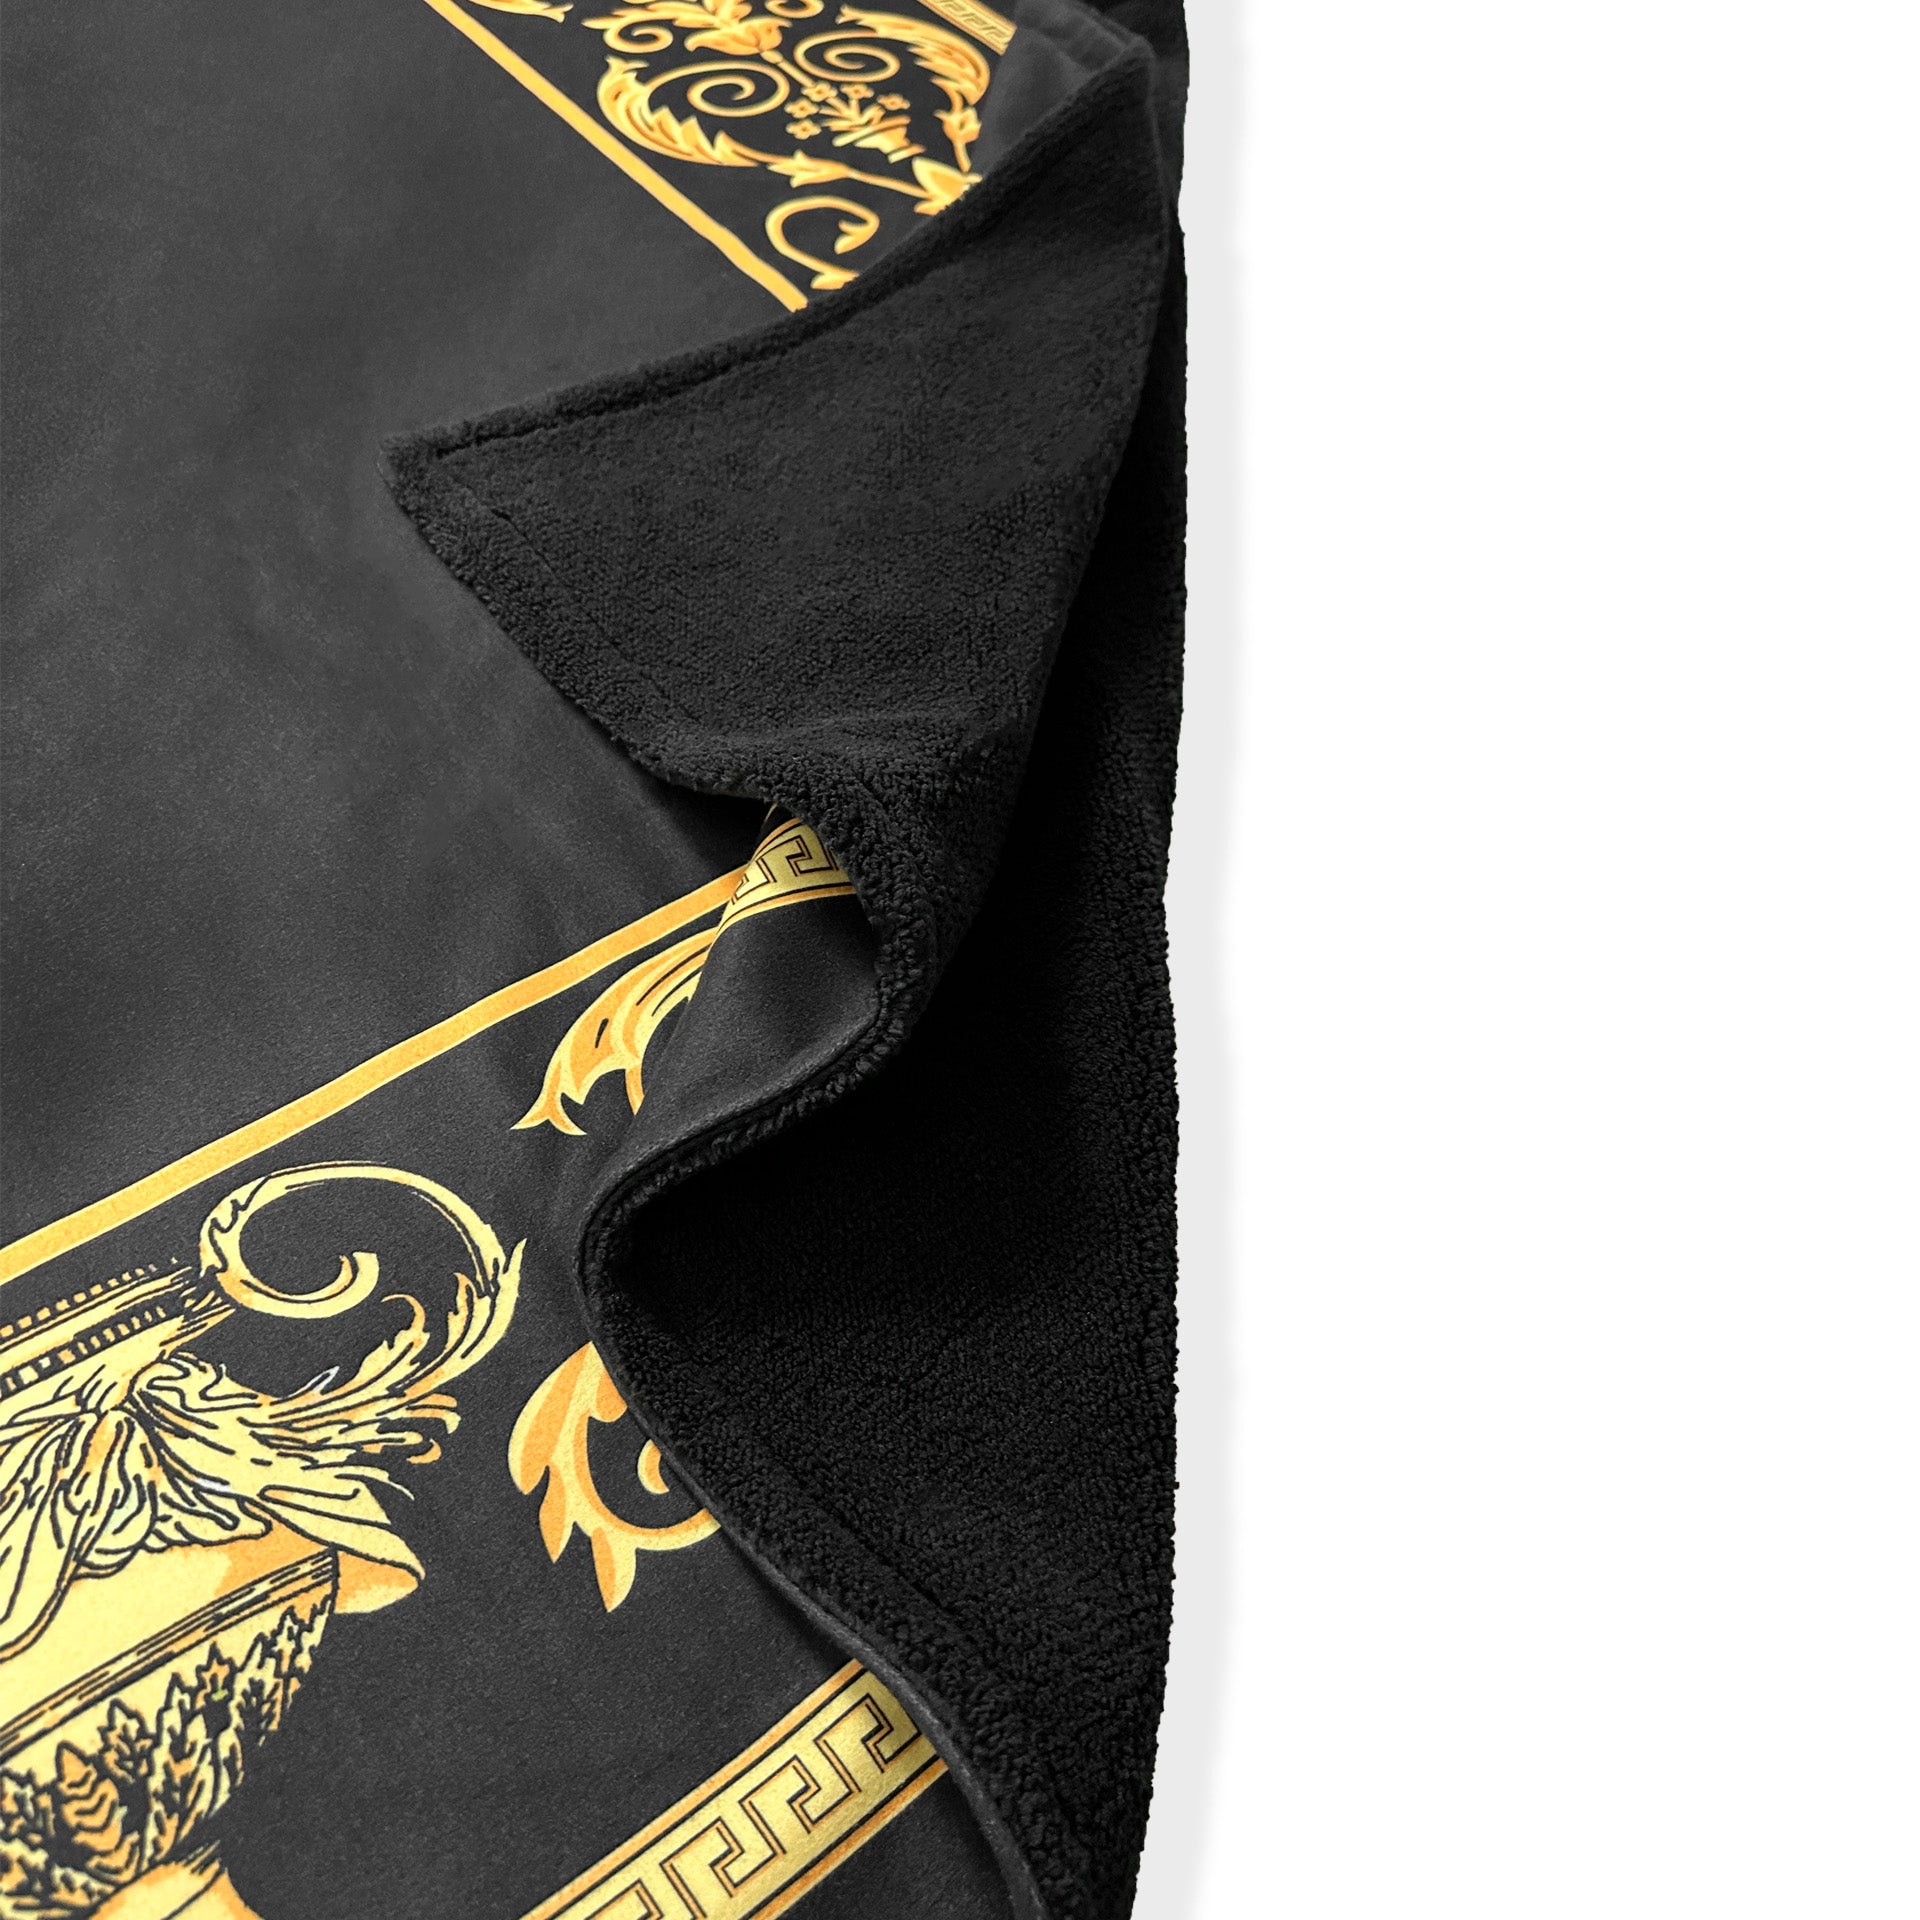 Exklusive Sherpa Decke mit Amphore Motiv in schwarz gold - 150 x 200 - warm & kuschelweich